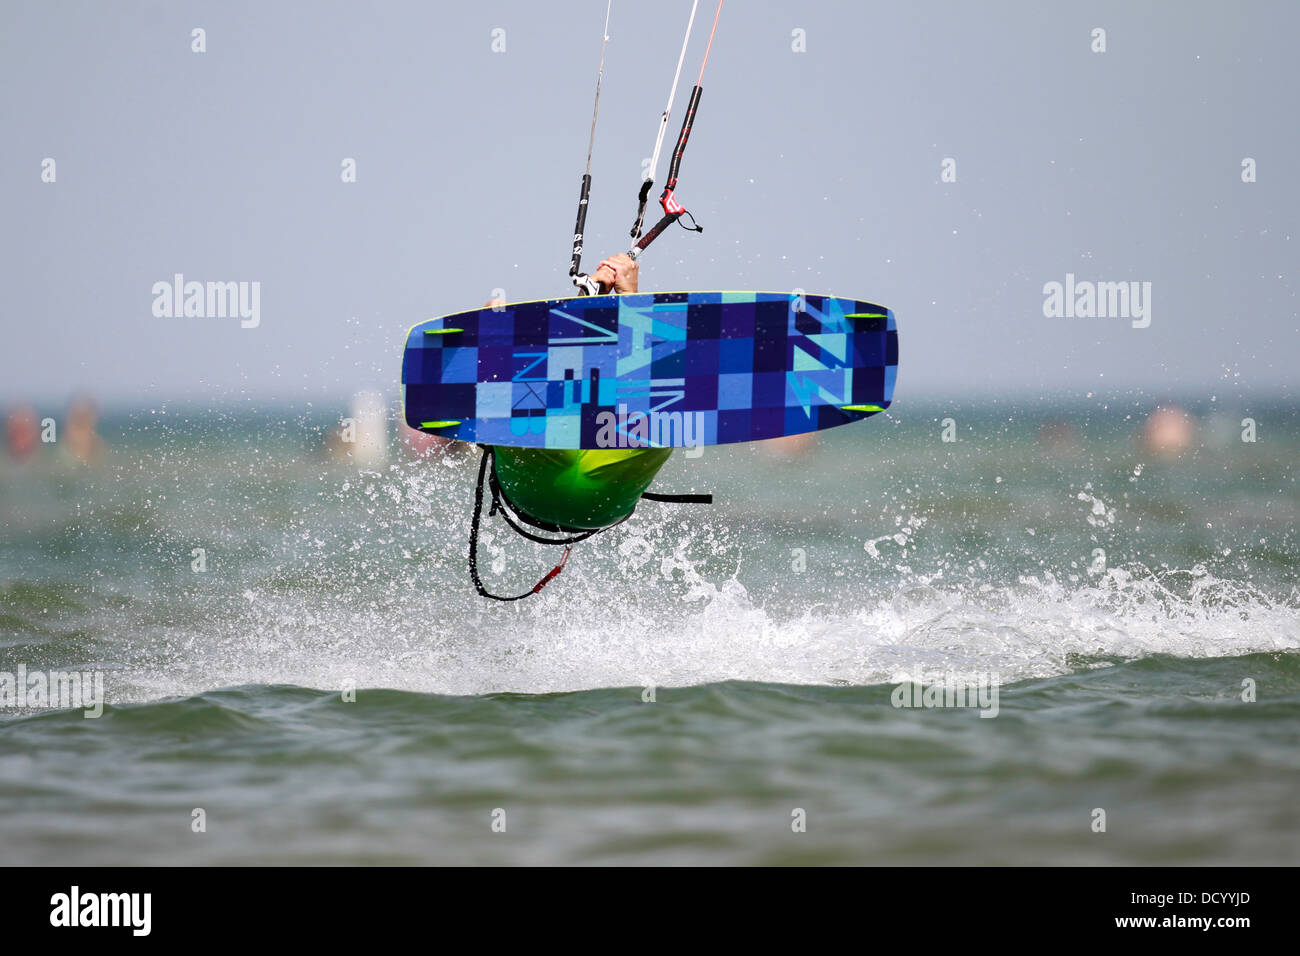 Un kiteboarder en plein vol au-dessus d'un lac. Banque D'Images